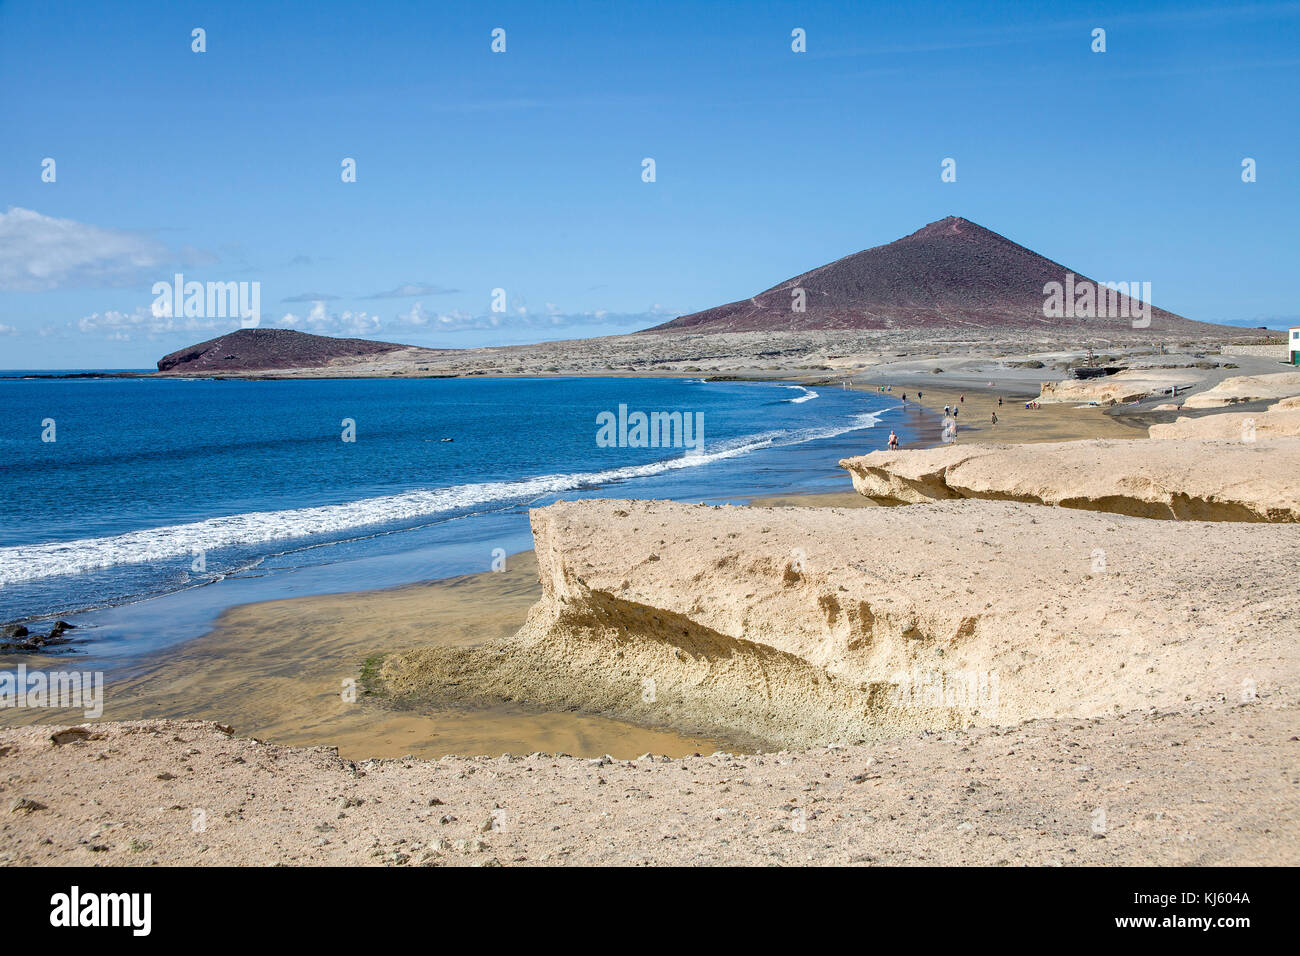 Strand von El Medano und Montana Roja, ein beliebtes Ziel für Surfer auf Teneriffa, Kanarische Inseln, Spanien Stockfoto